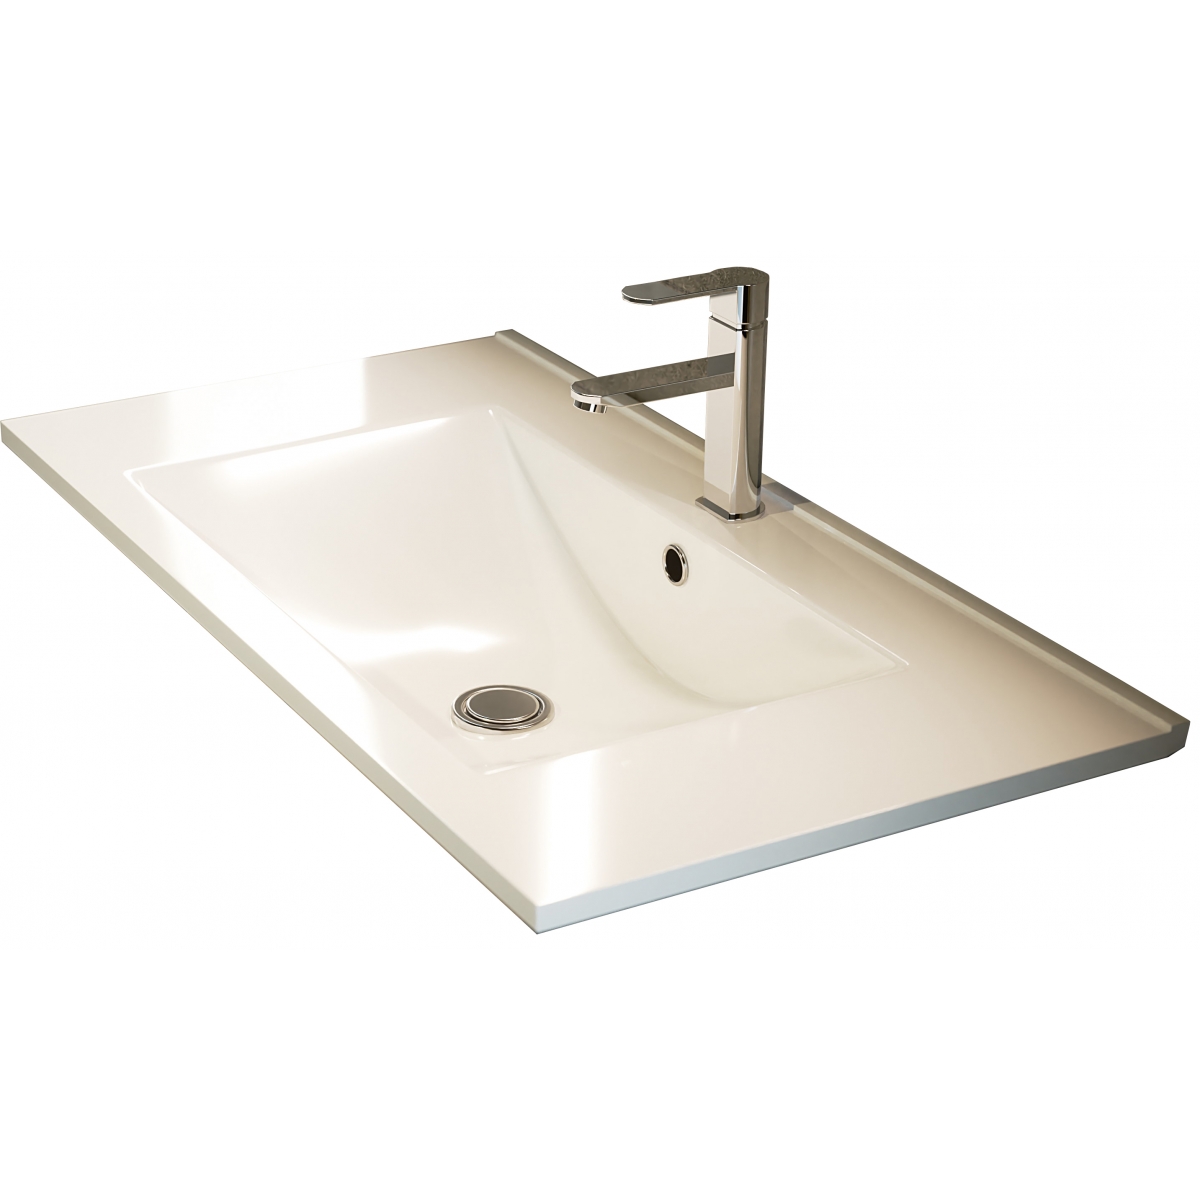 Fotos ambiente de Mueble de baño suspendido Dover de 120 cm de ancho color Hiberian con lavabo integrado [55119]